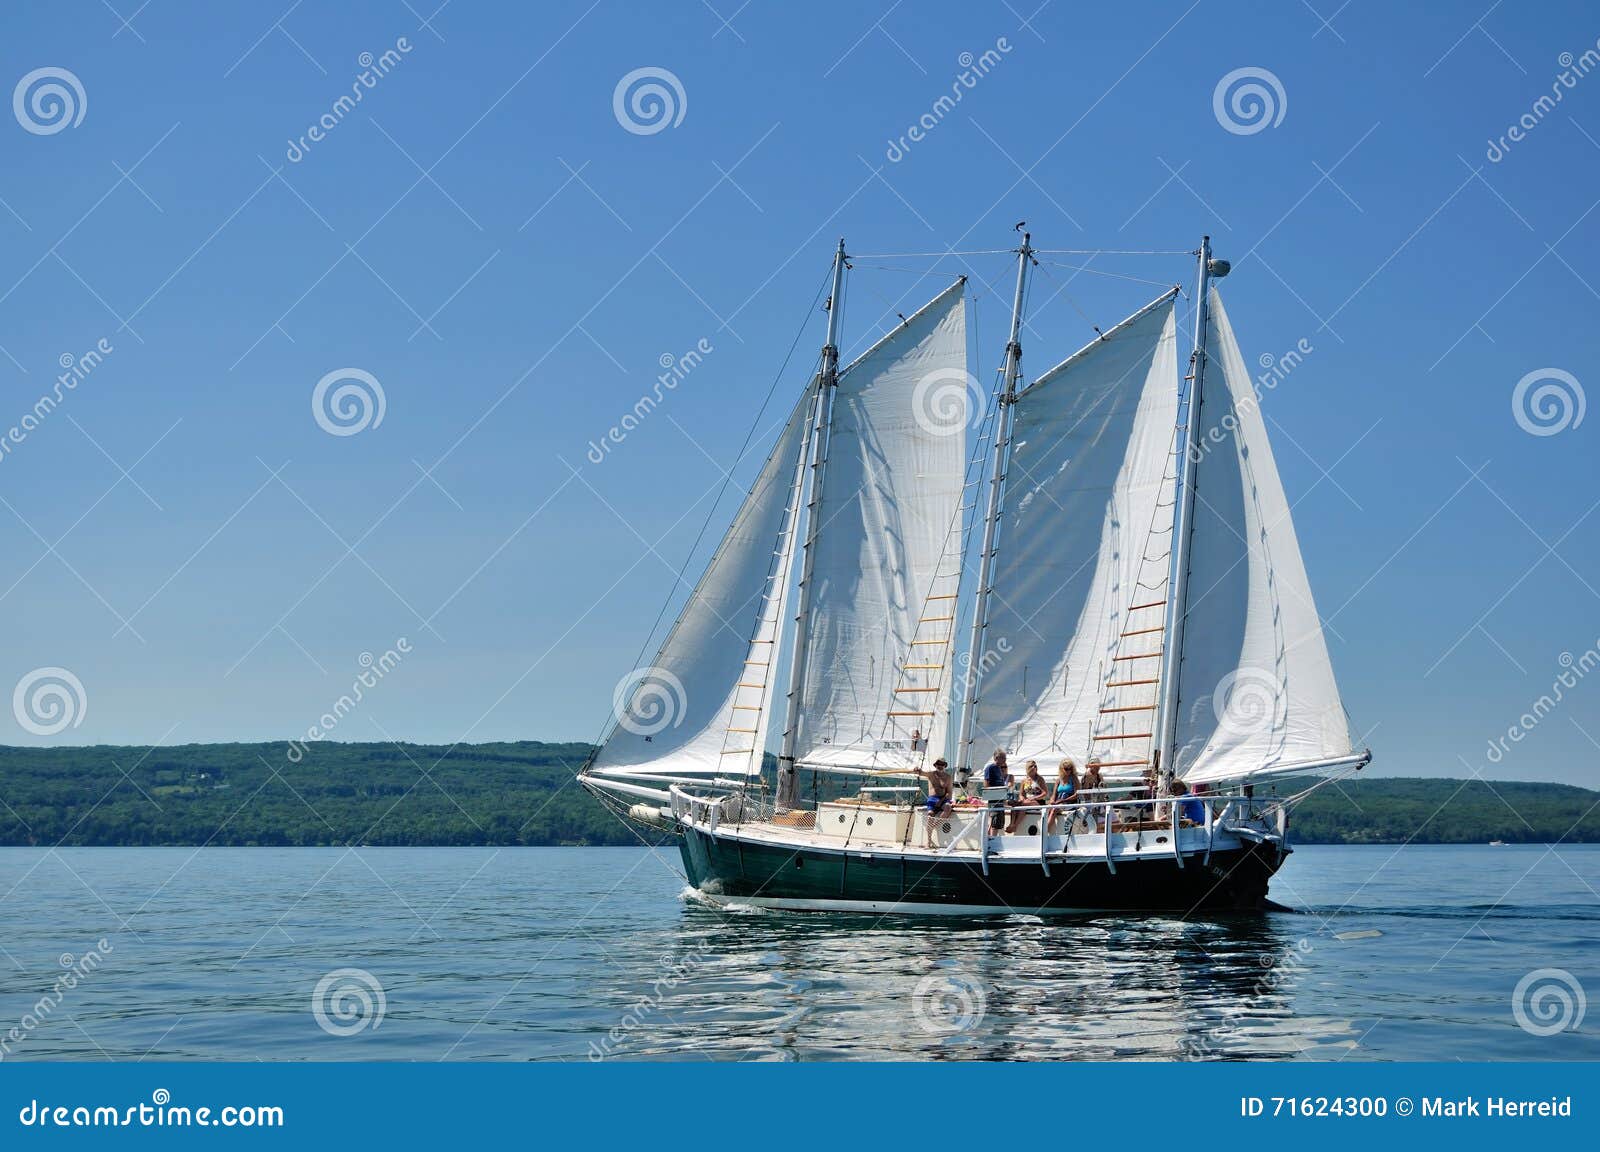 the schooner sailboat